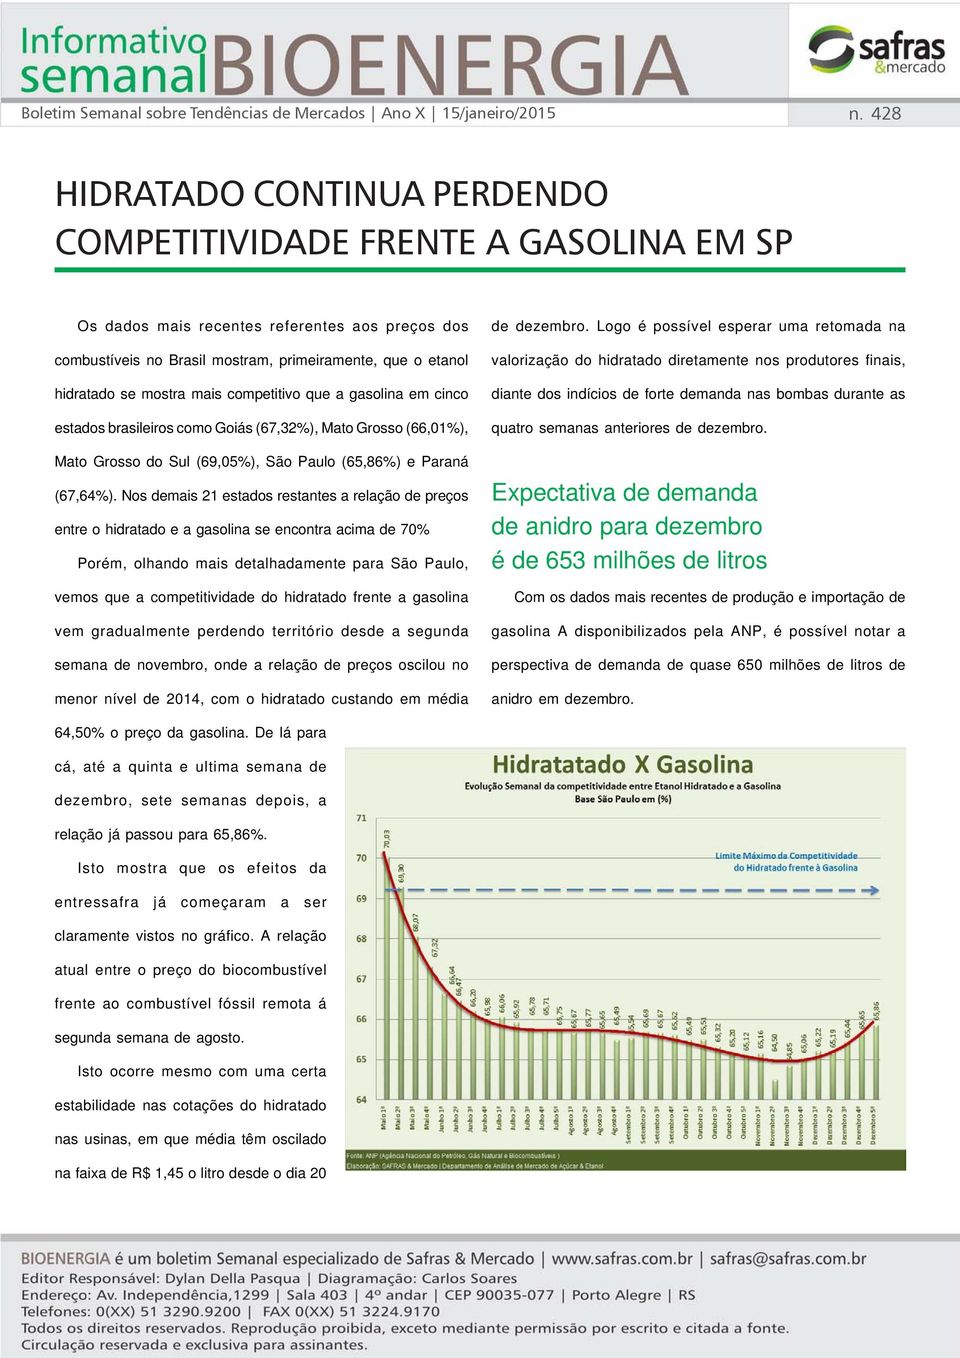 mostra mais competitivo que a gasolina em cinco estados brasileiros como Goiás (67,32%), Mato Grosso (66,01%), Mato Grosso do Sul (69,05%), São Paulo (65,86%) e Paraná (67,64%).